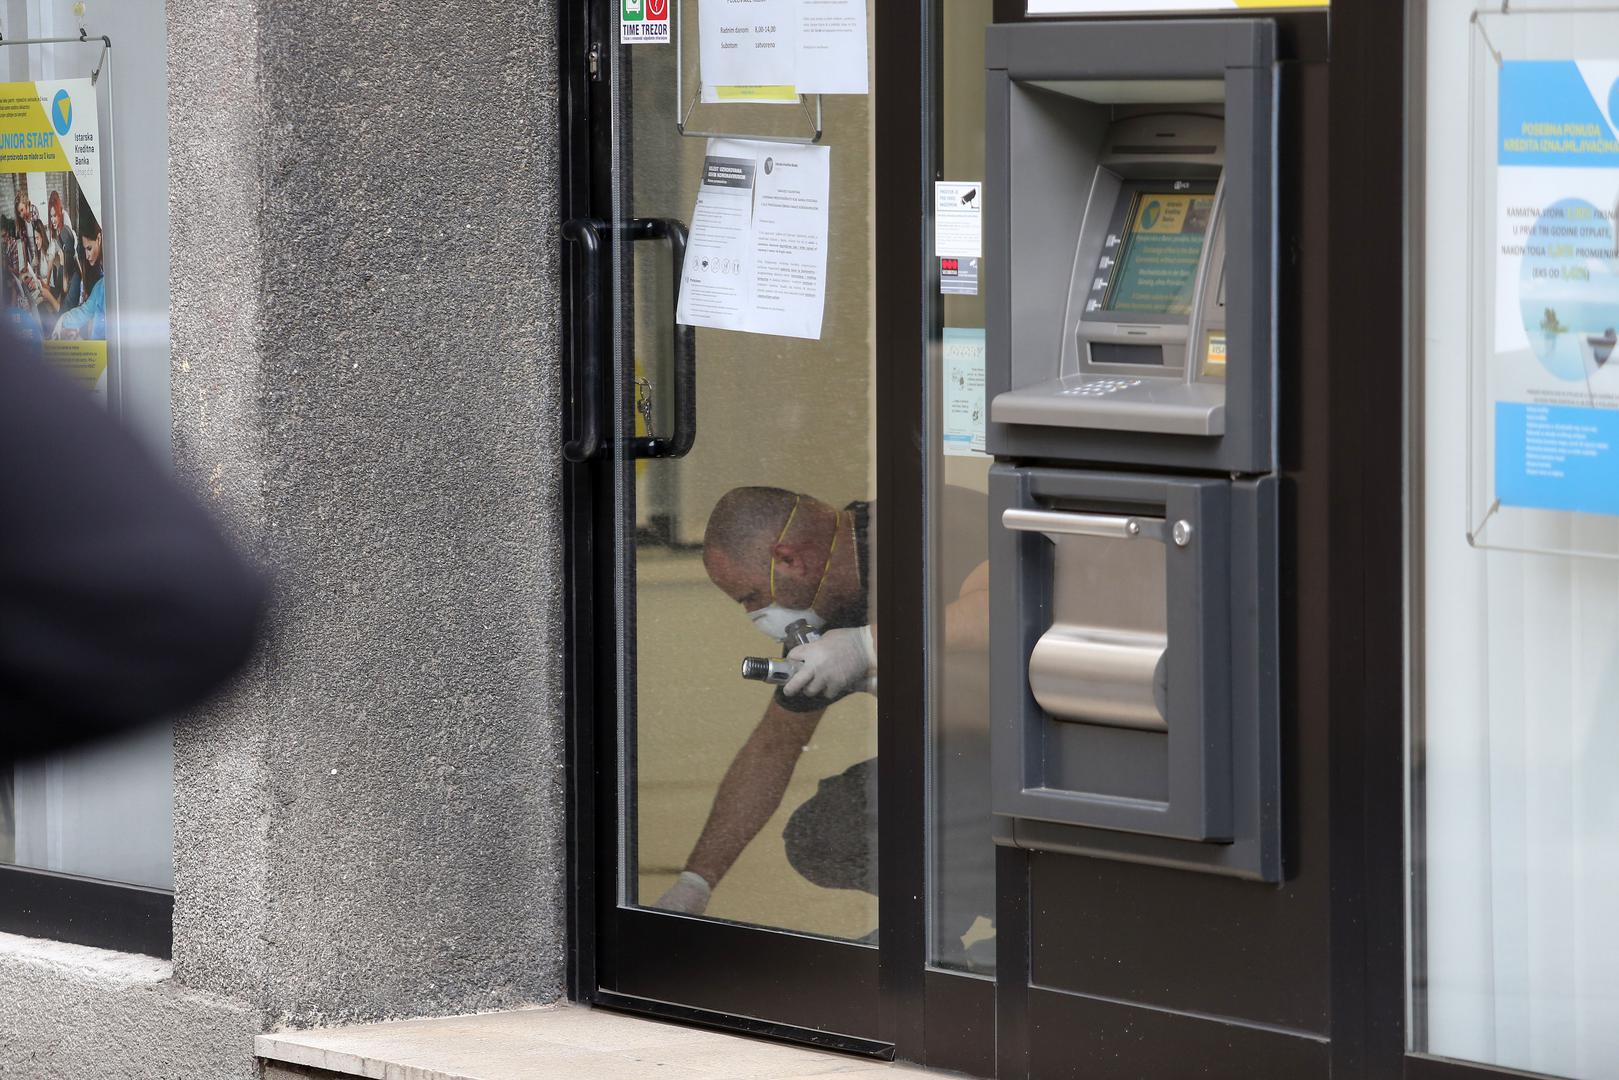 Razbojništvo u poslovnici banke u Ulici Janeza Trdine dogodilo se u 8.30 sati.

